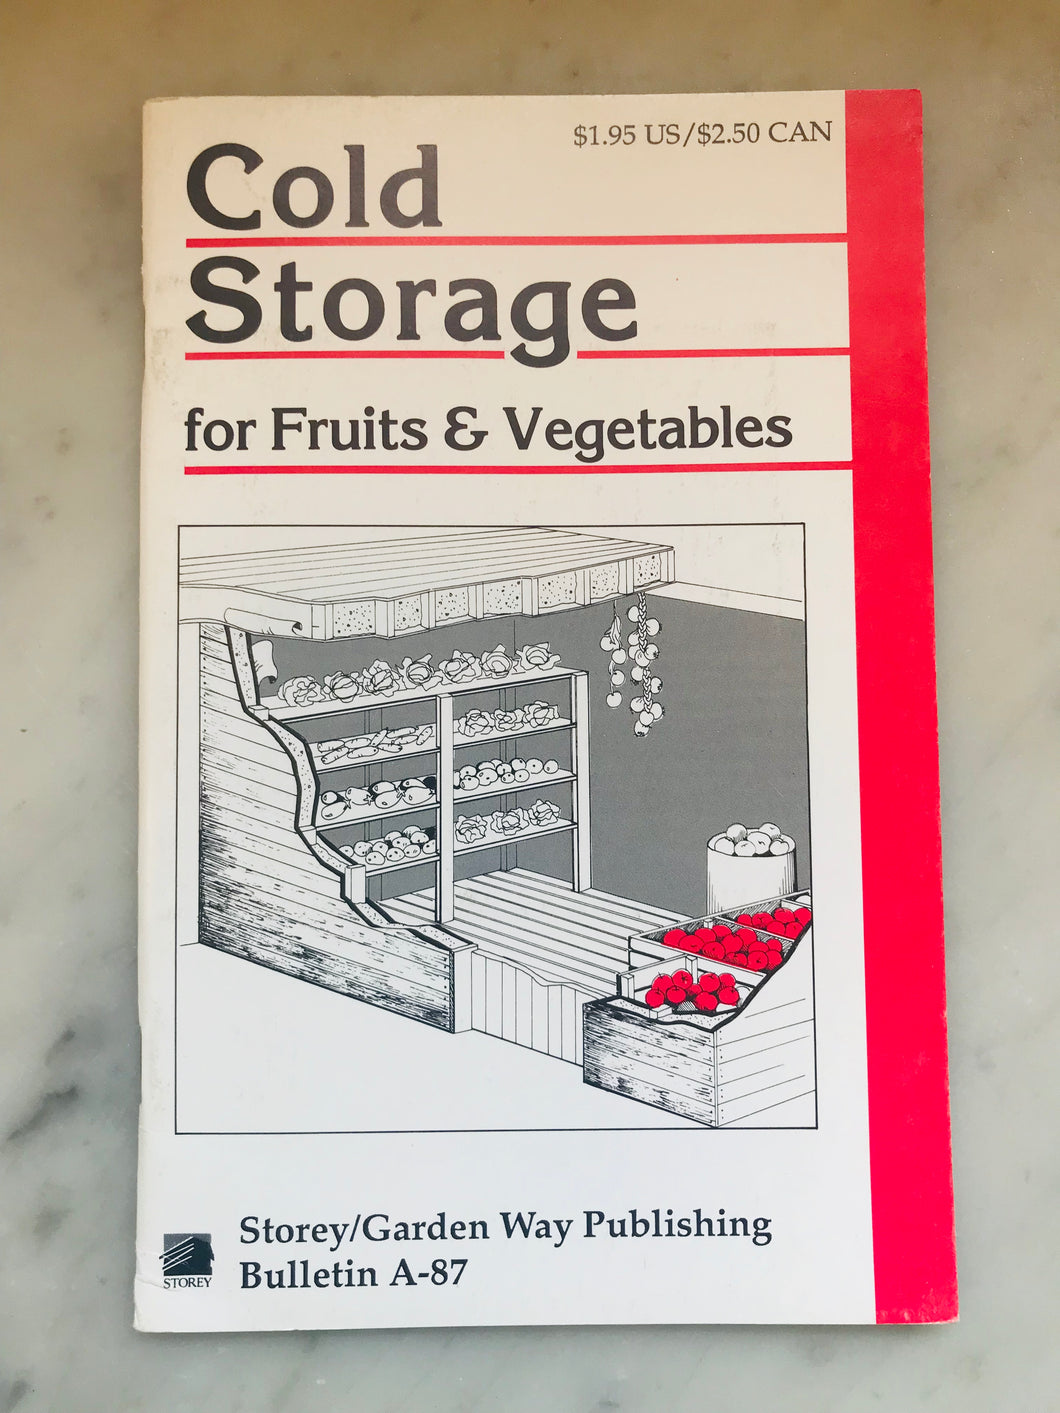 Cold Storage for Fruits & Vegetables